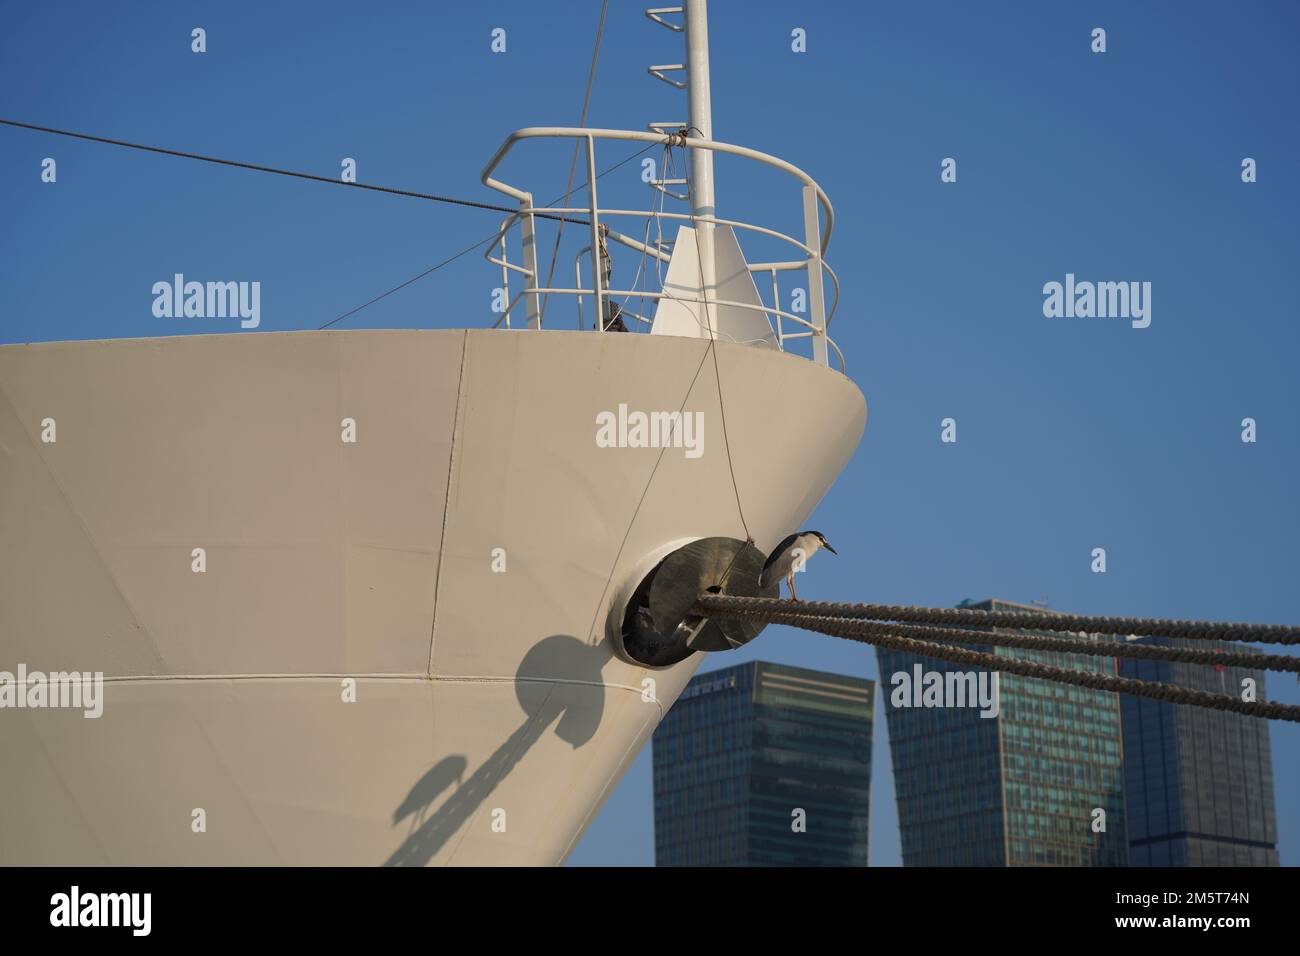 Nahaufnahme eines angedockten Schiffs und einer Seevögel, die an der Seite des Schiffs stehen Stockfoto